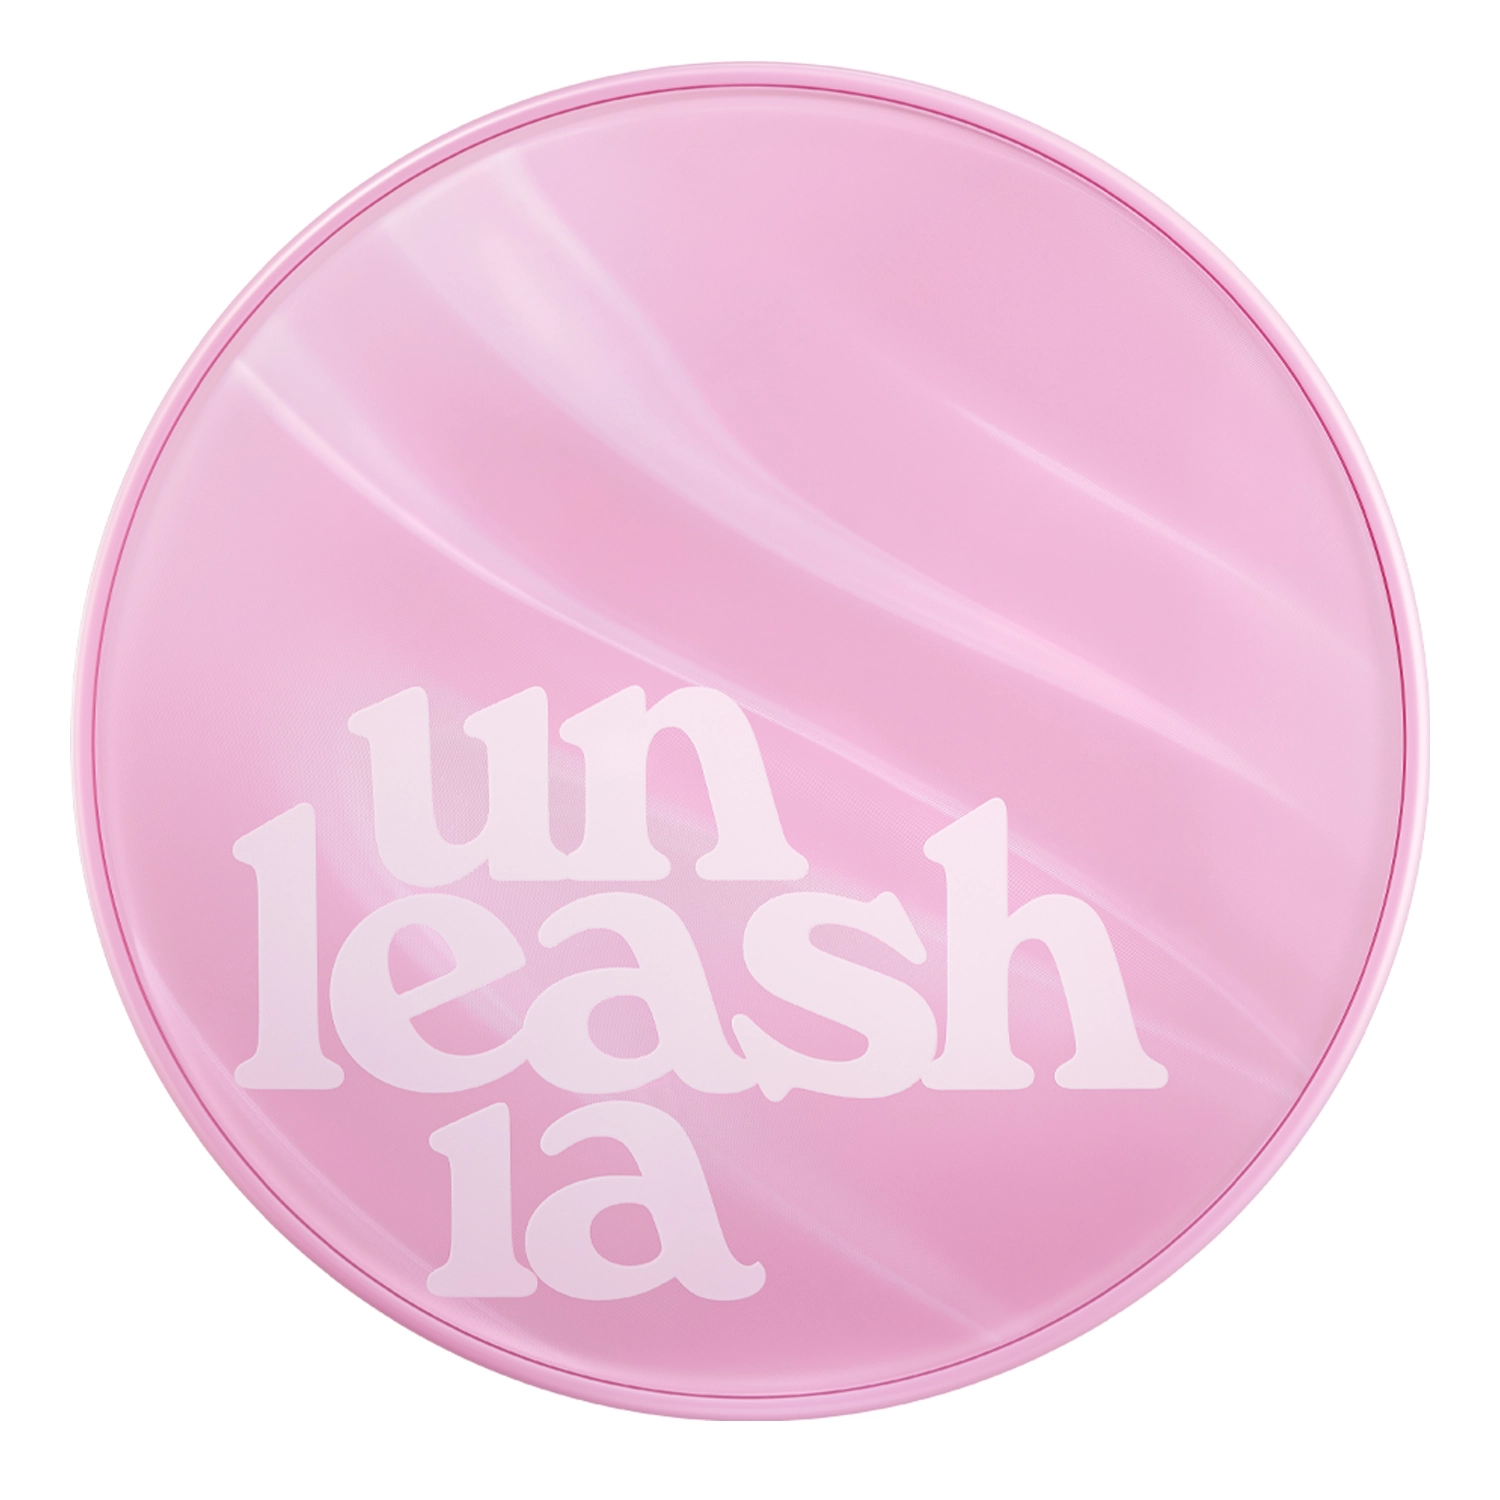 Unleashia - Don't Touch Glass Pink Cushion SPF50+ PA++++ - Fond de ten Cushion - #25N Molten - 15g